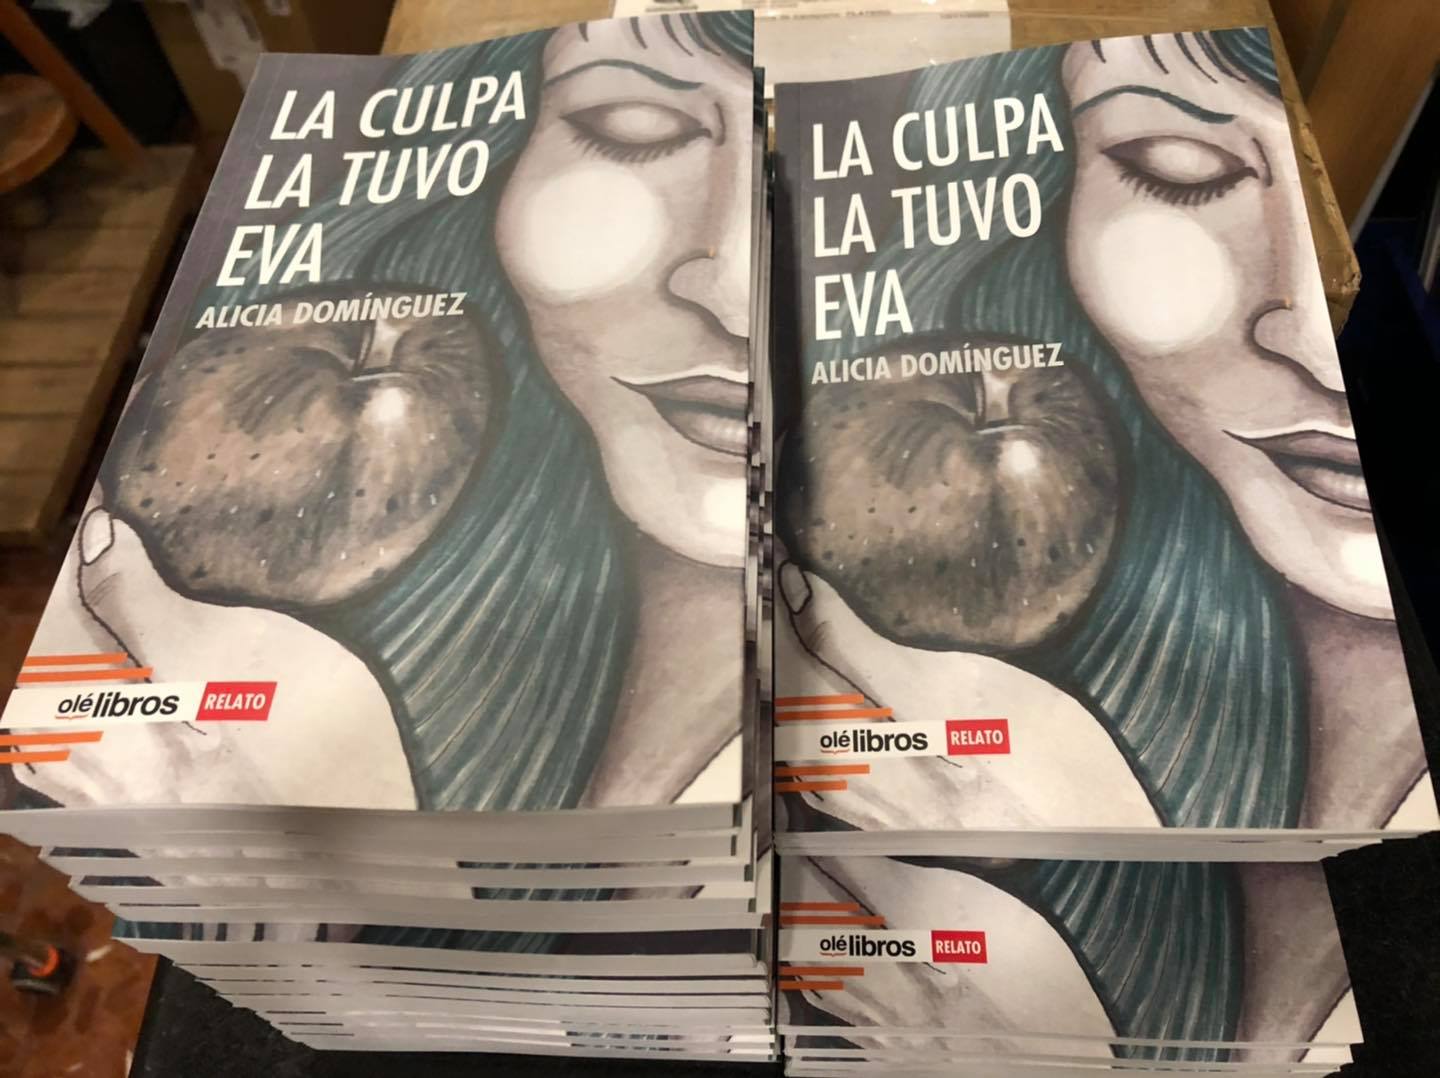 'La culpa la tuvo Eva', el nuevo libro de Alicia Domínguez.